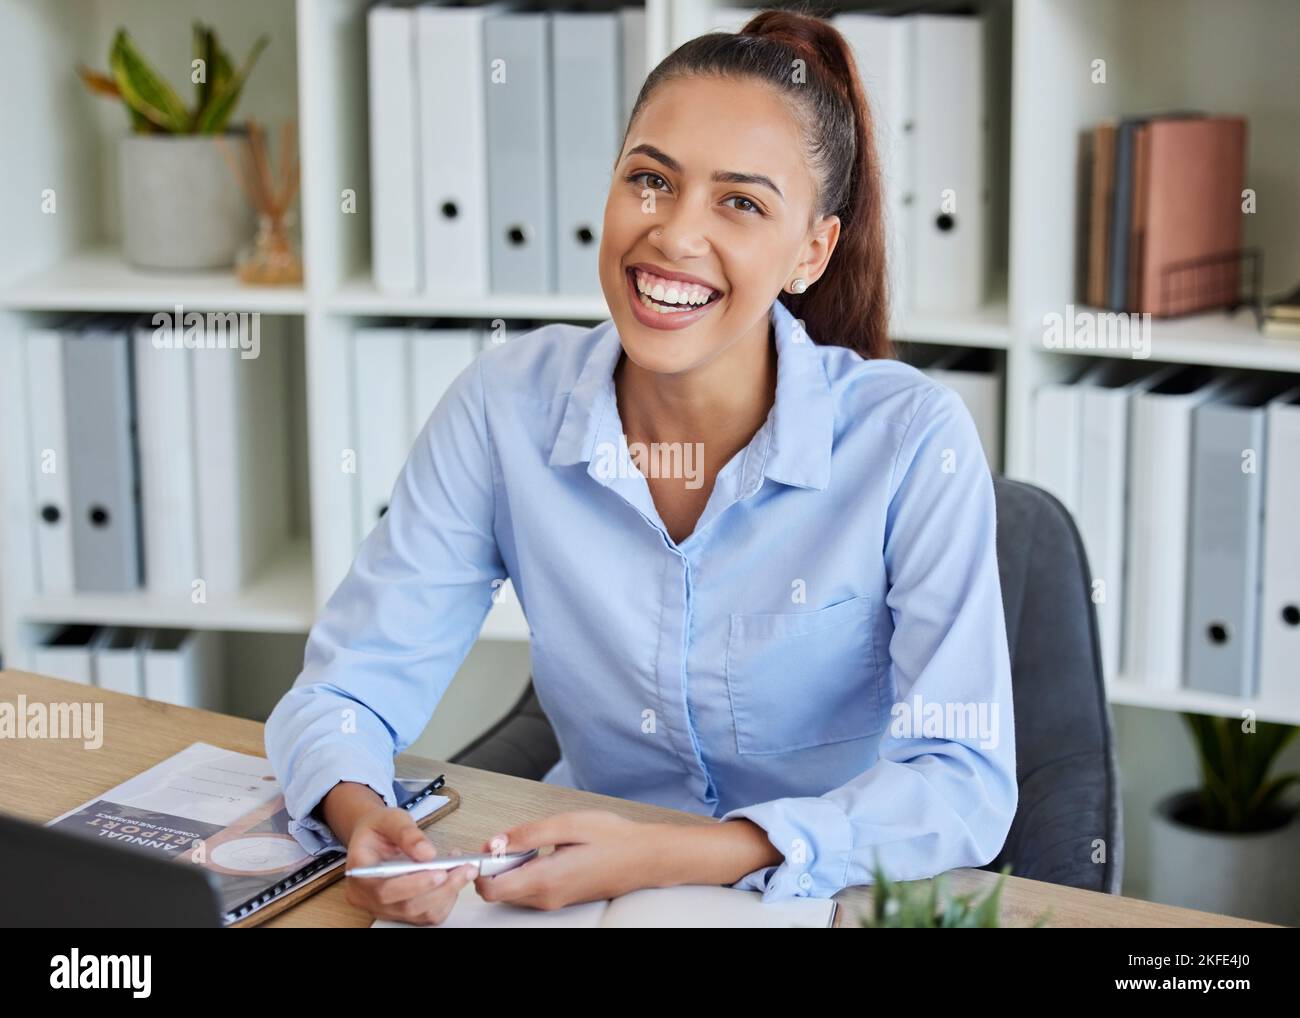 Heureux, sourire et portrait d'une femme d'affaires au bureau travaillant sur des notes d'entreprise pour le projet. Réussite, planification professionnelle et gestionnaire d'entreprise Banque D'Images